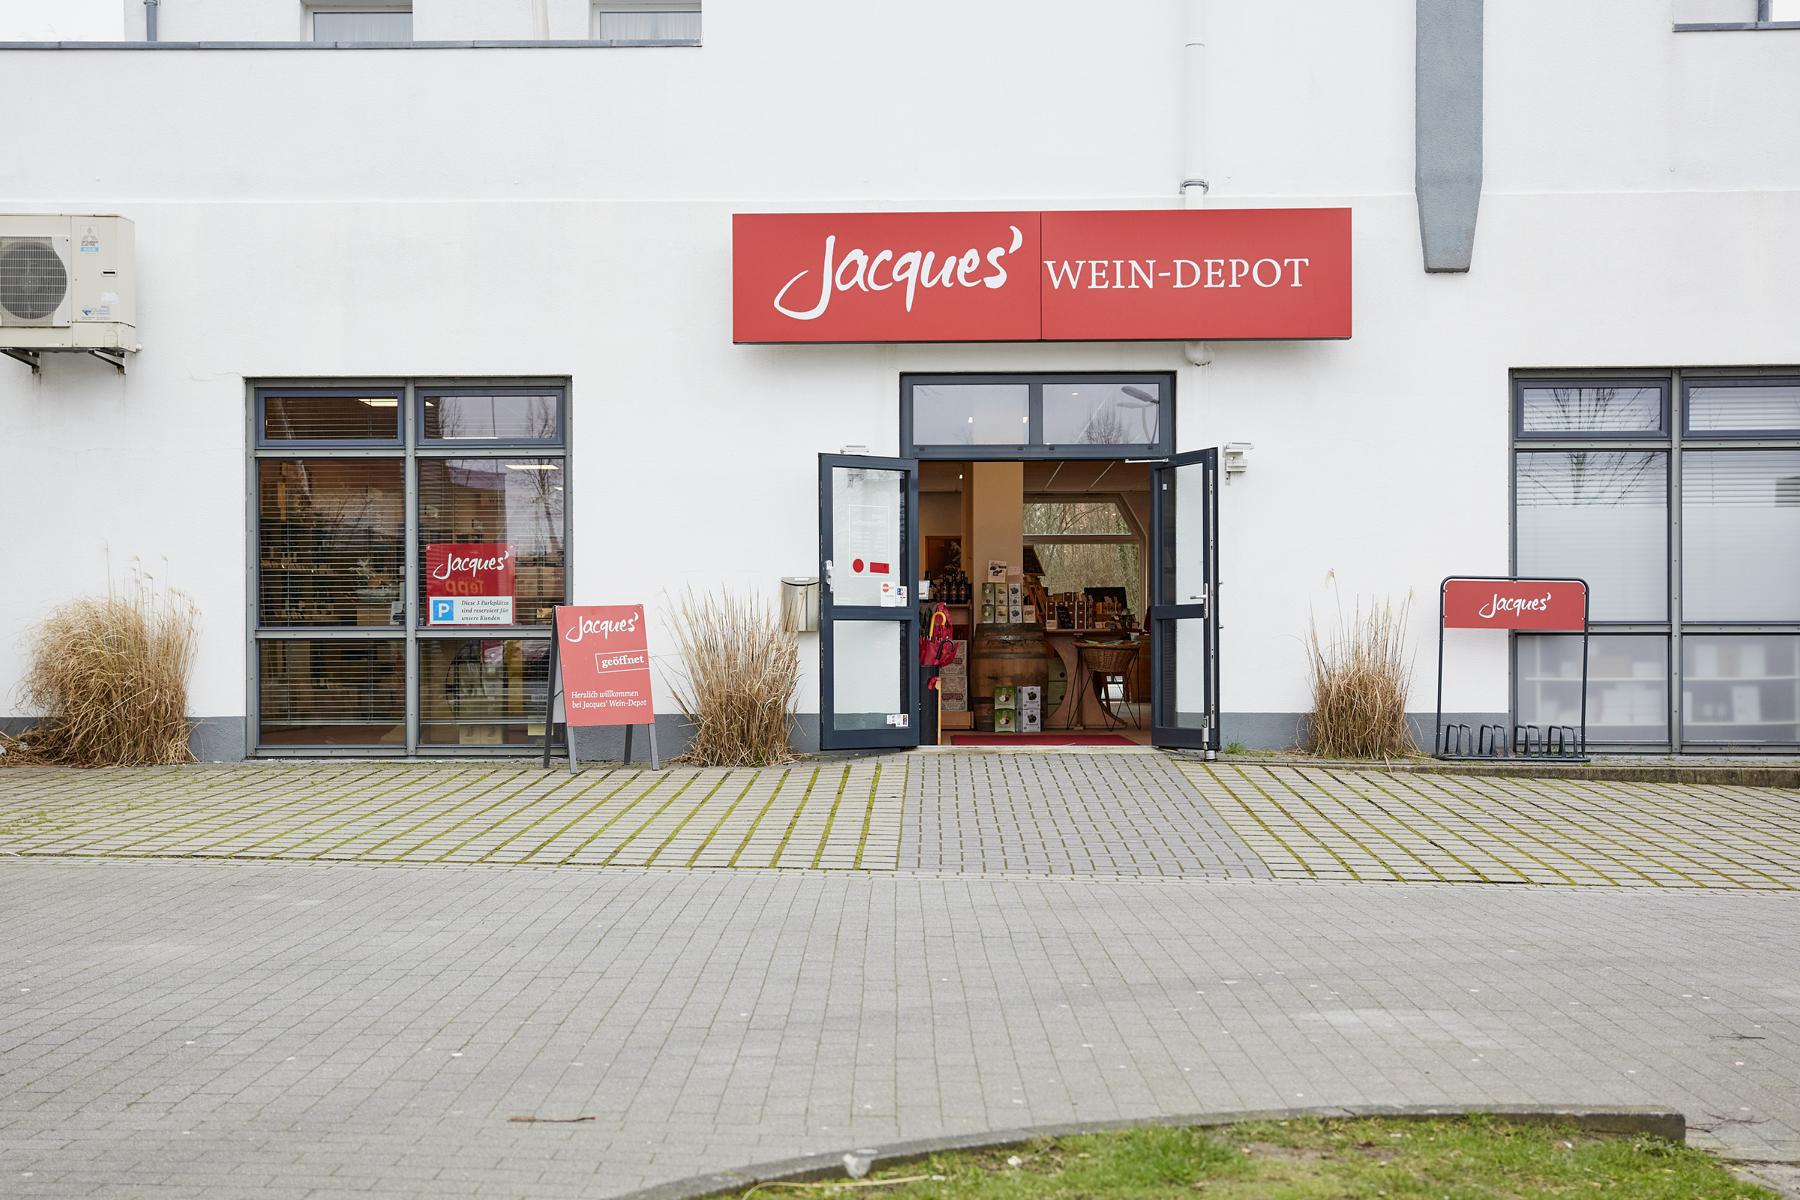 Bild 2 Jacques’ Wein-Depot Delmenhorst in Delmenhorst